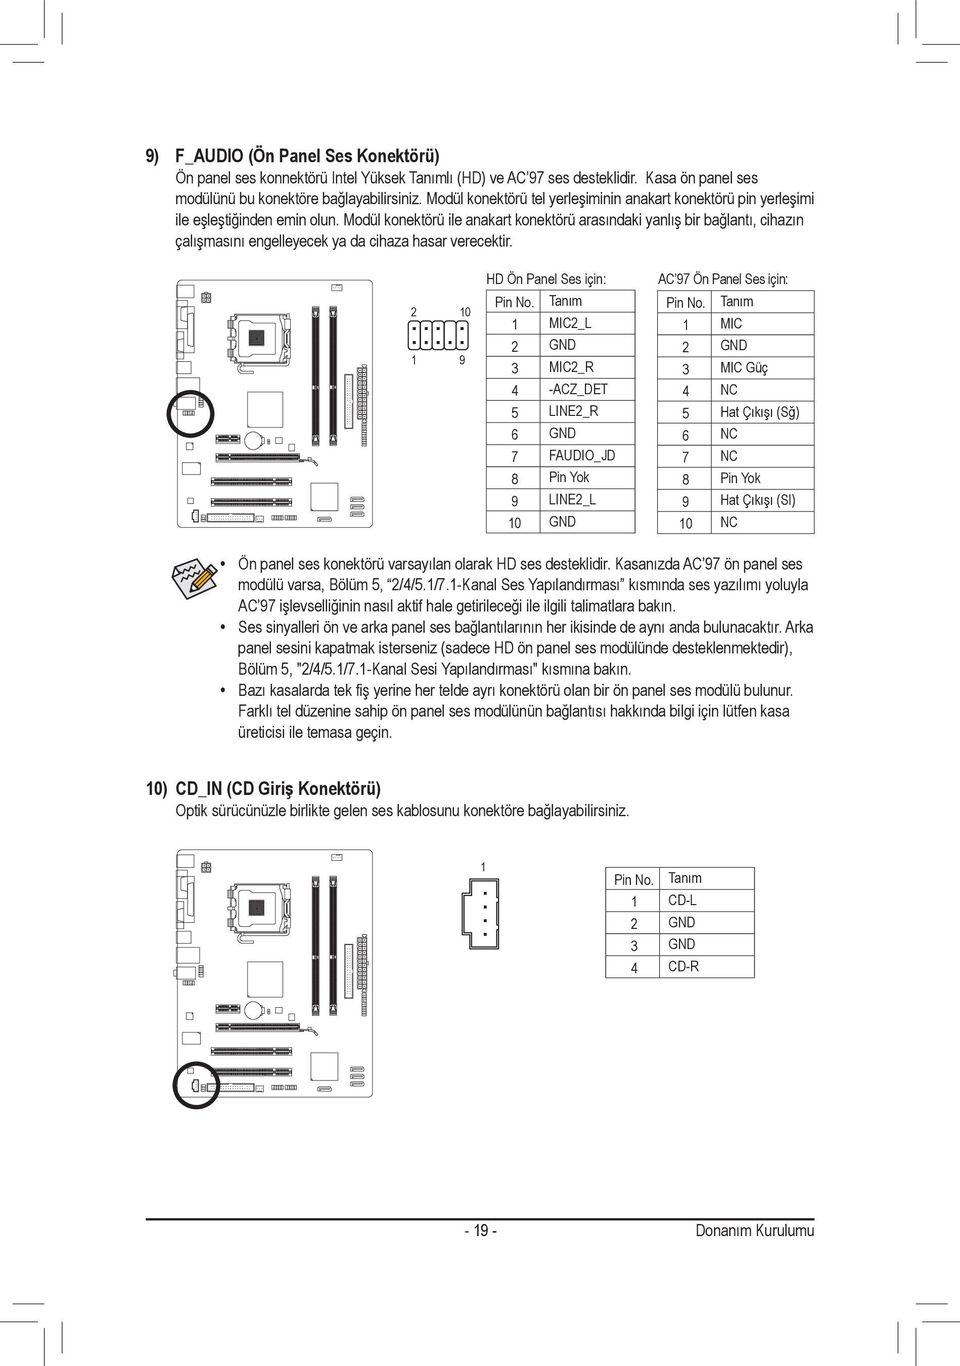 Modül konektörü ile anakart konektörü arasındaki yanlış bir bağlantı, cihazın çalışmasını engelleyecek ya da cihaza hasar verecektir. 2 10 1 9 HD Ön Panel Ses için: Pin No.